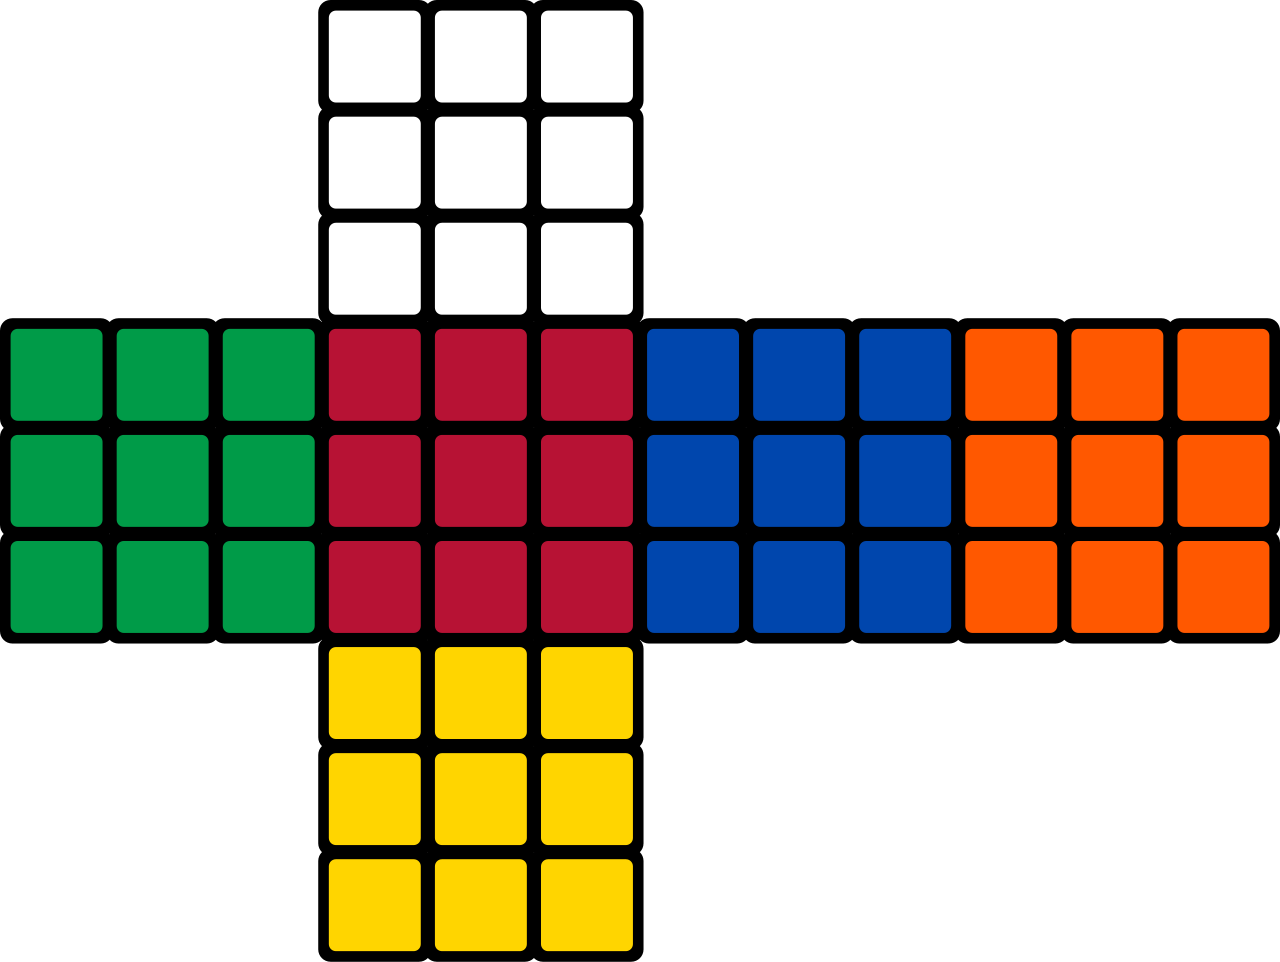 Estructuralmente Muchos fluctuar File:Rubik's cube colors.svg - Wikimedia Commons